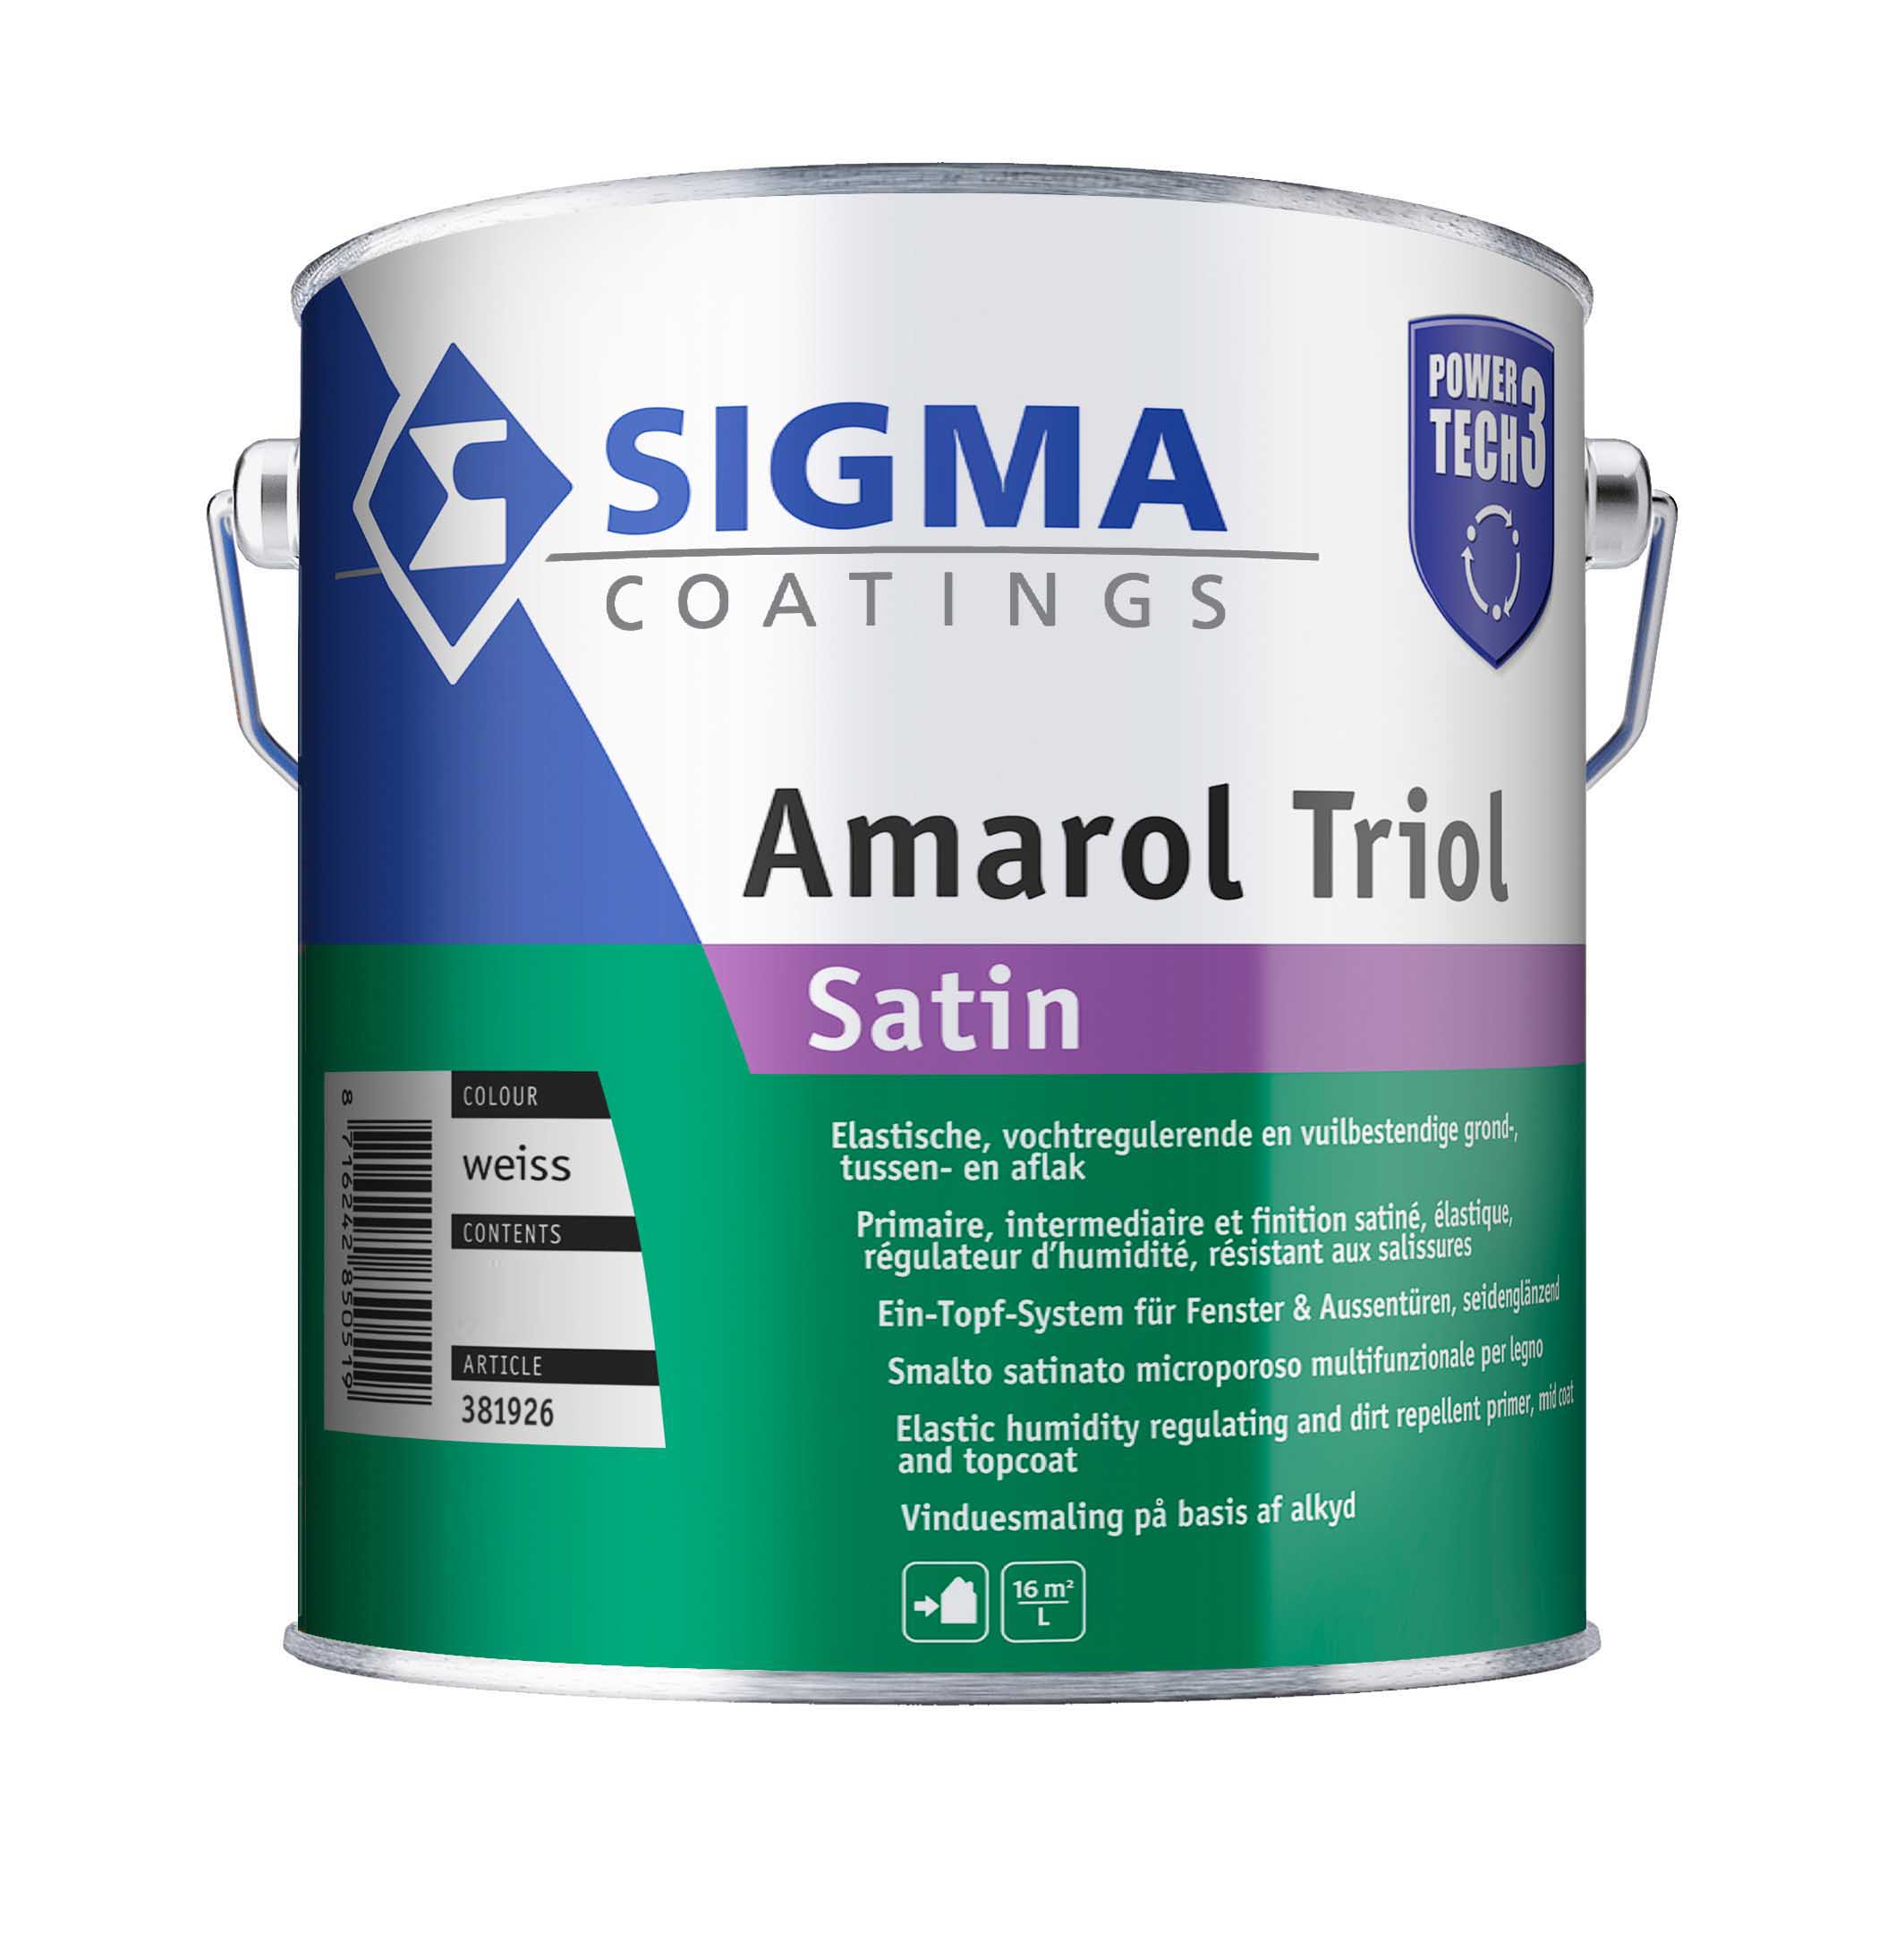 SIGMA Amarol Triol Satin - seidenglänzendes Ein-Topf-System